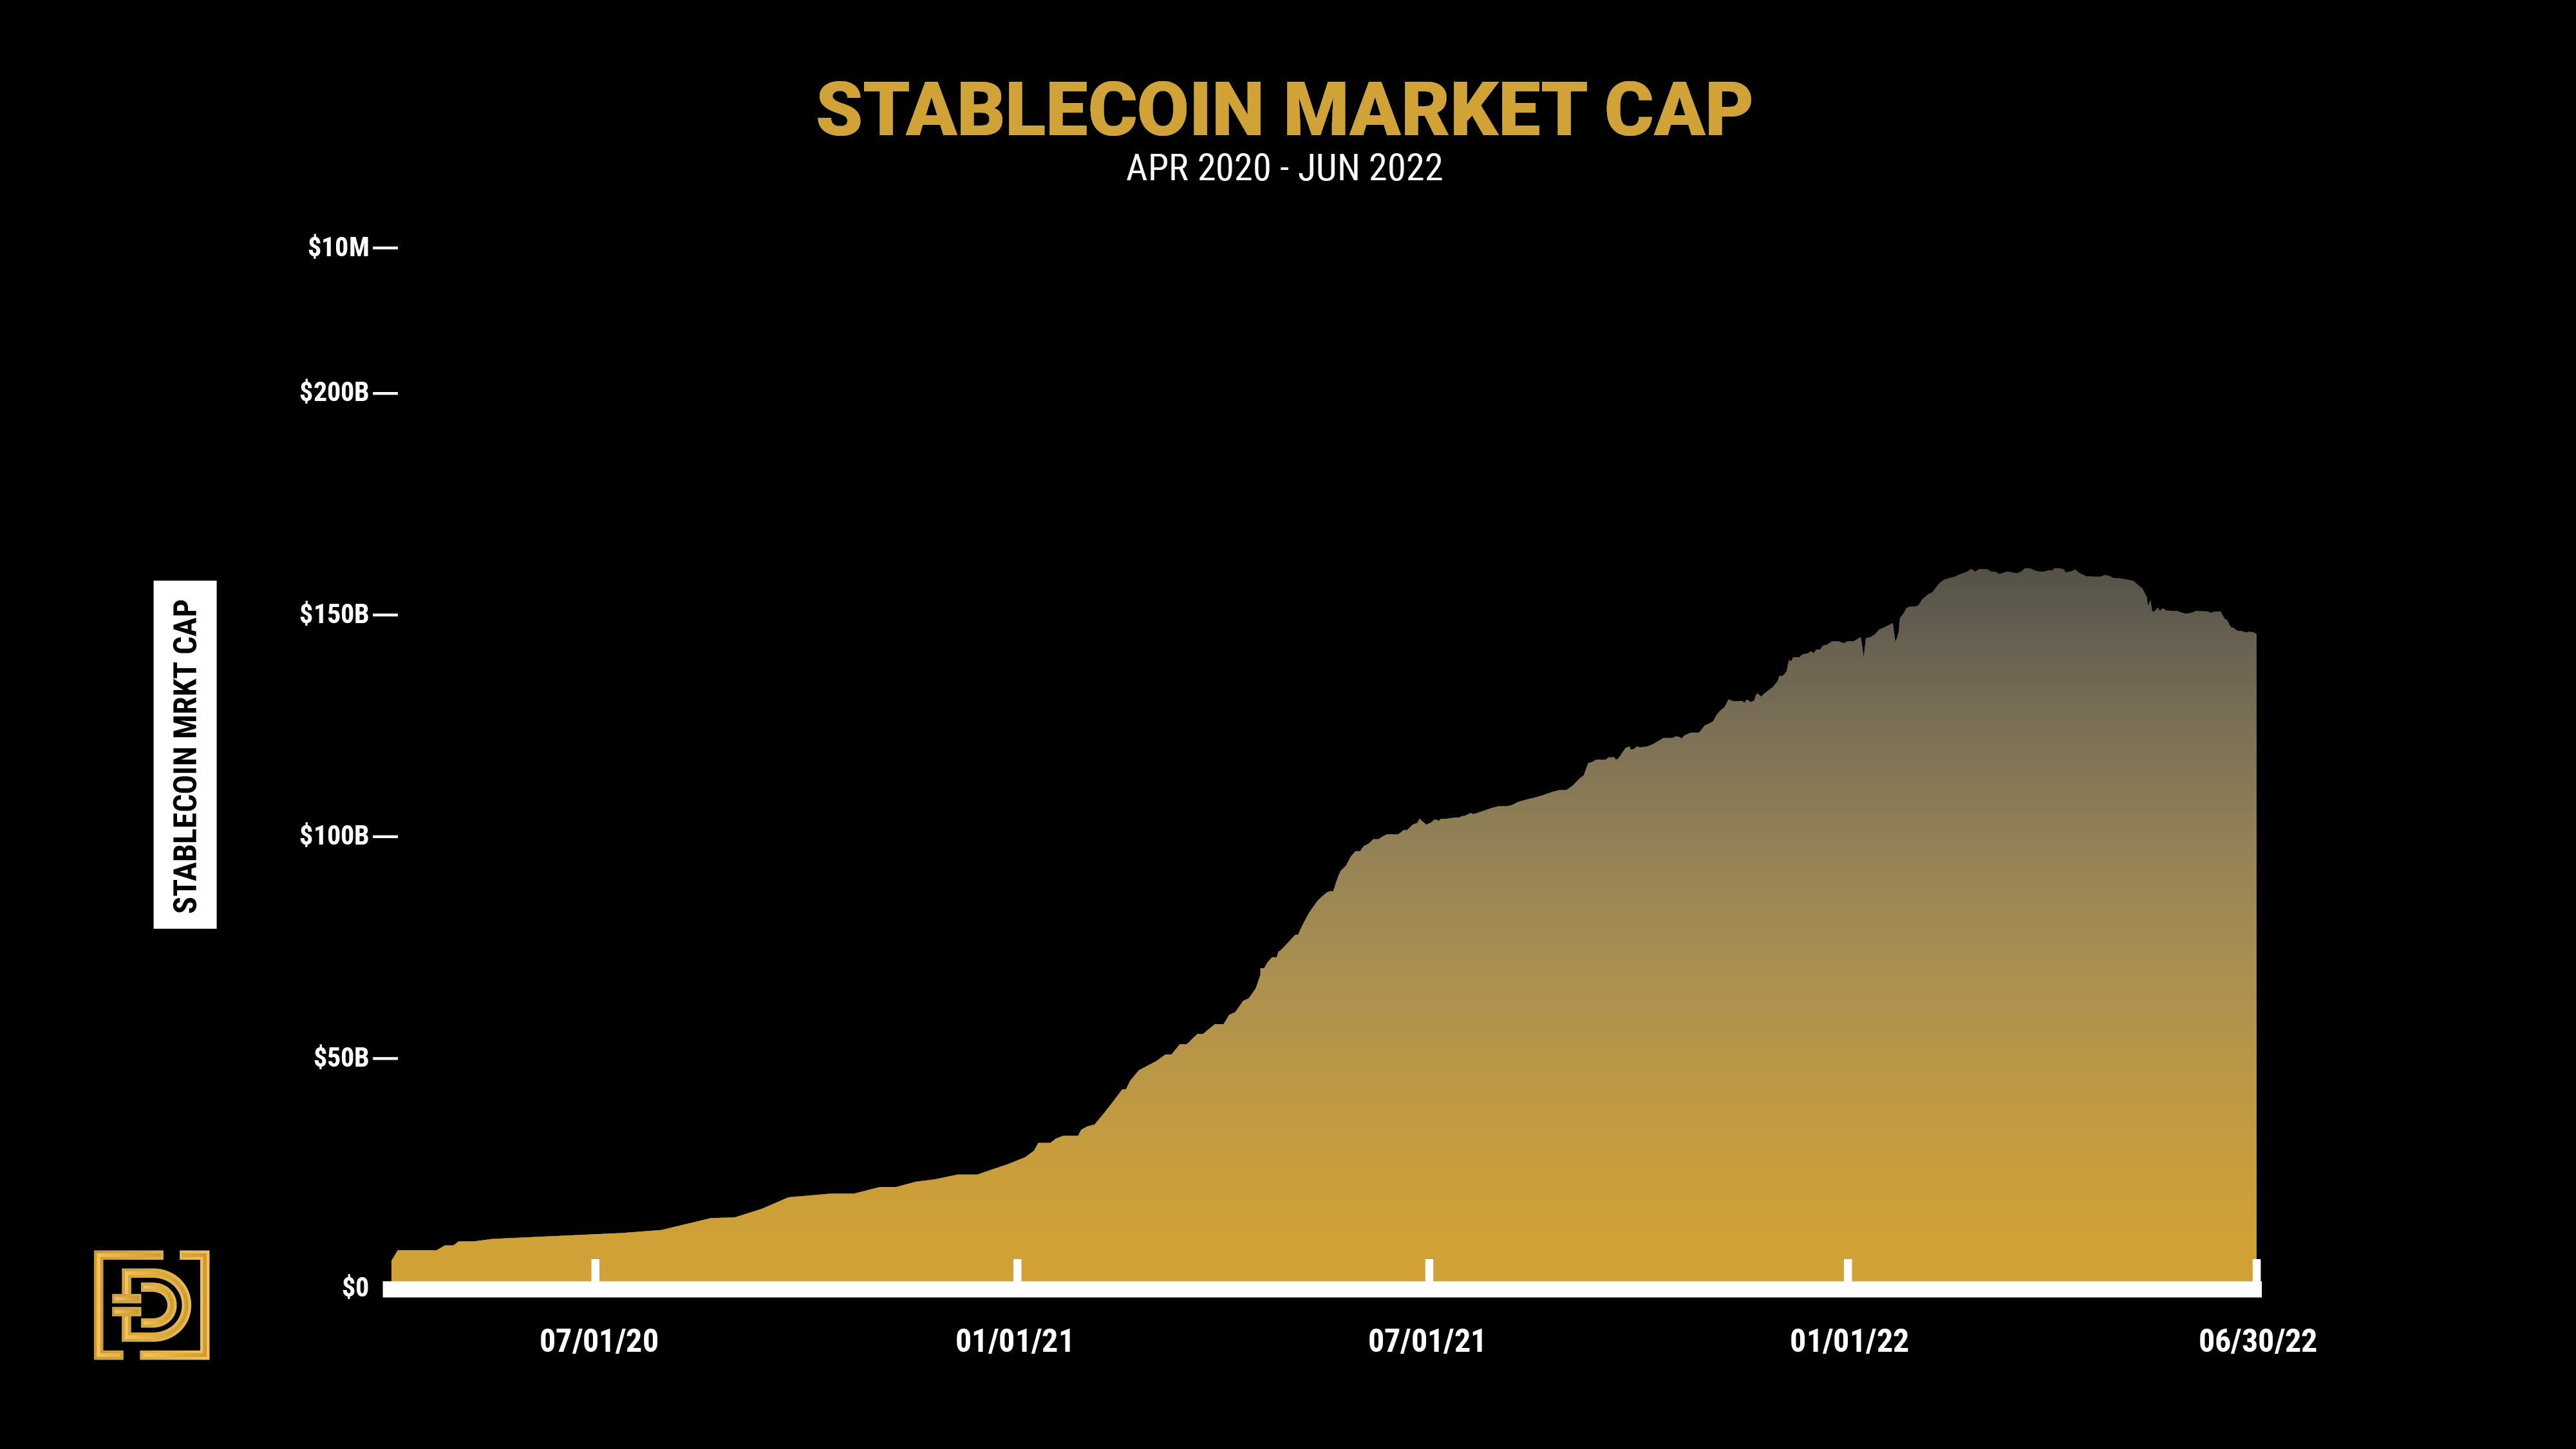 Stablecoin Market Cap from DAIM